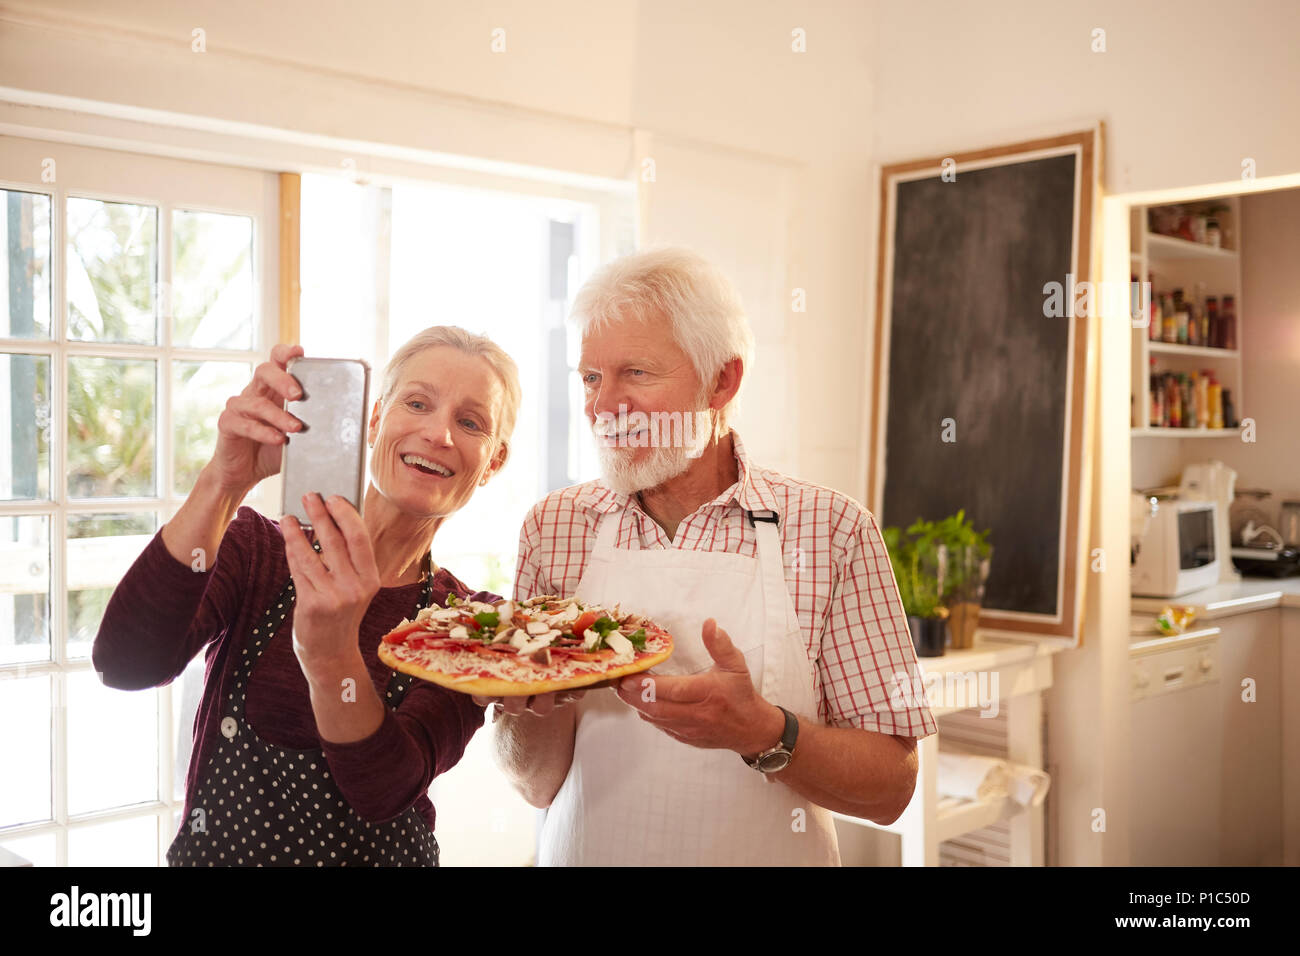 Lächelnd, zuversichtlich senior Paar unter selfie mit Pizza im Kochkurs Stockfoto